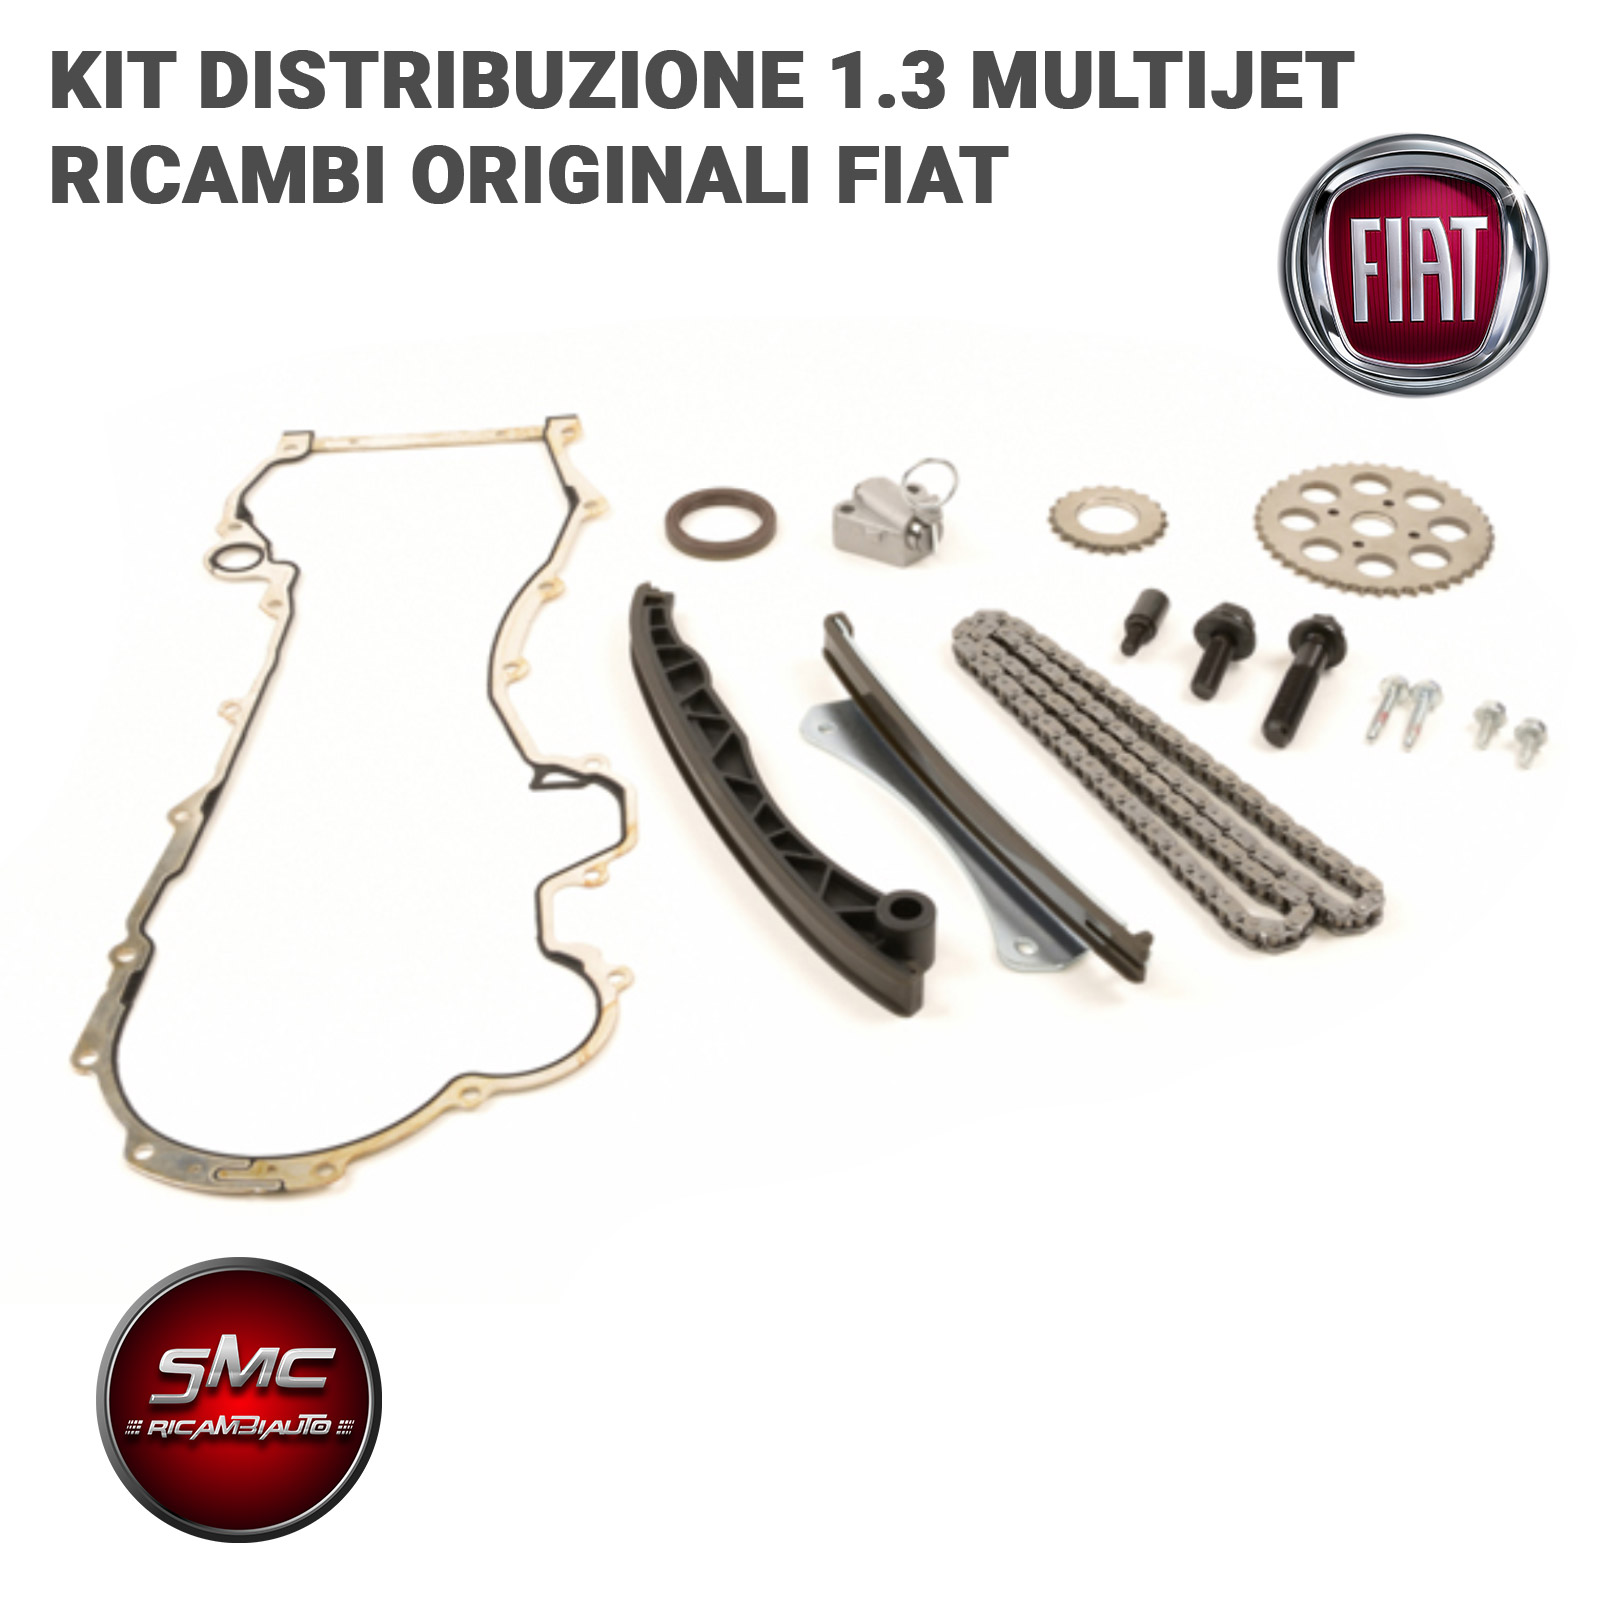 Kit Catena Distribuzione rinforzato Fiat 1.3 Multijet - Ricambi auto SMC